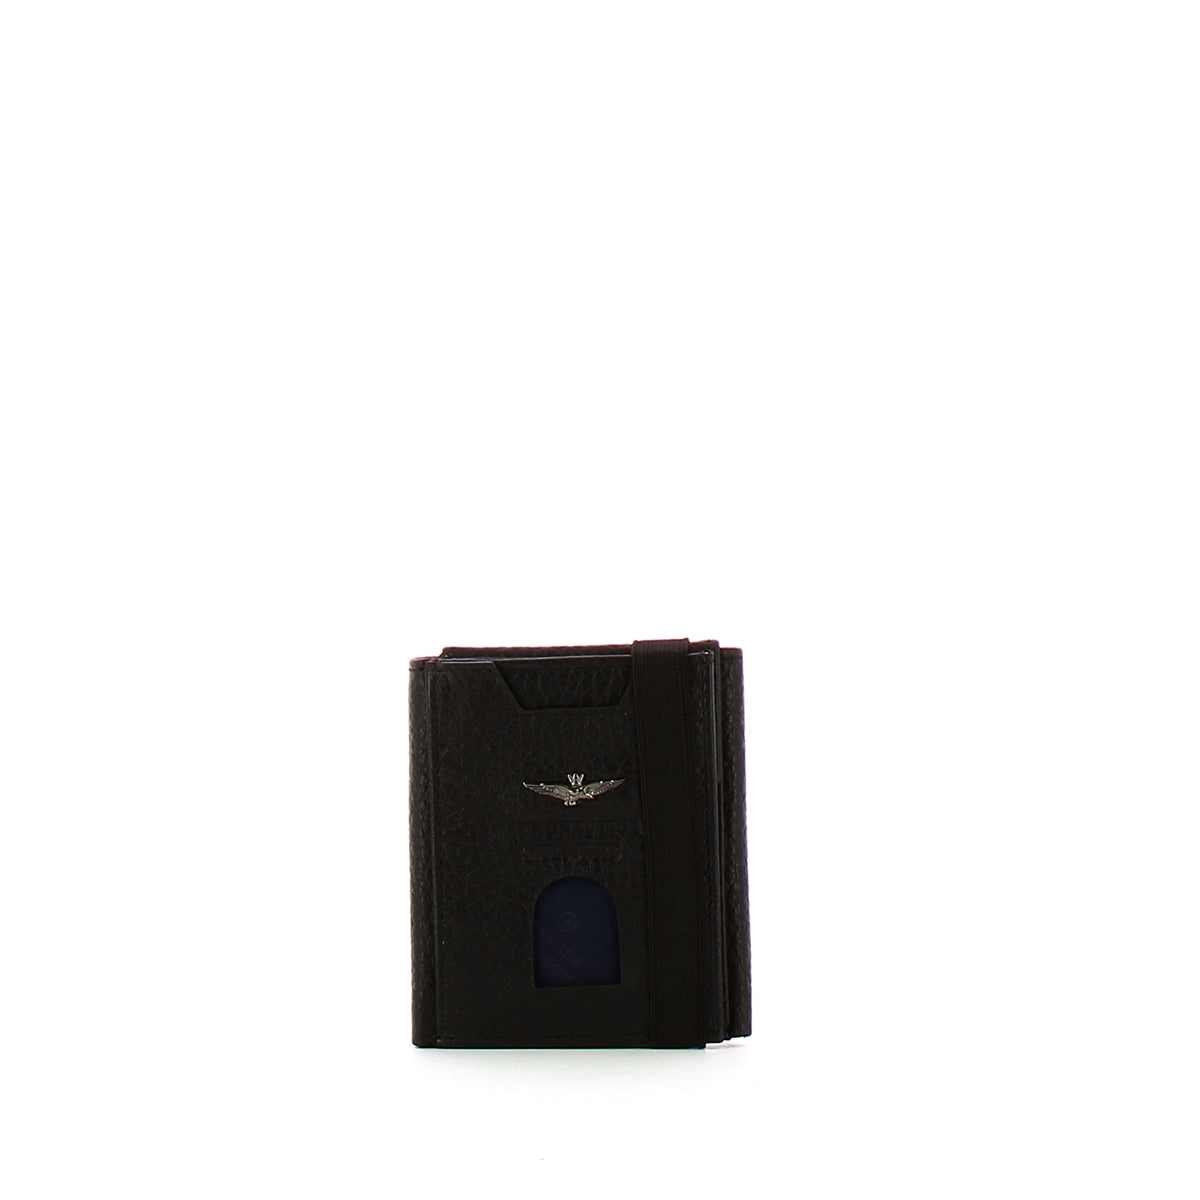 Aeronautica Militare - Portafoglio tascabile con porta carte - AM185 - NERO